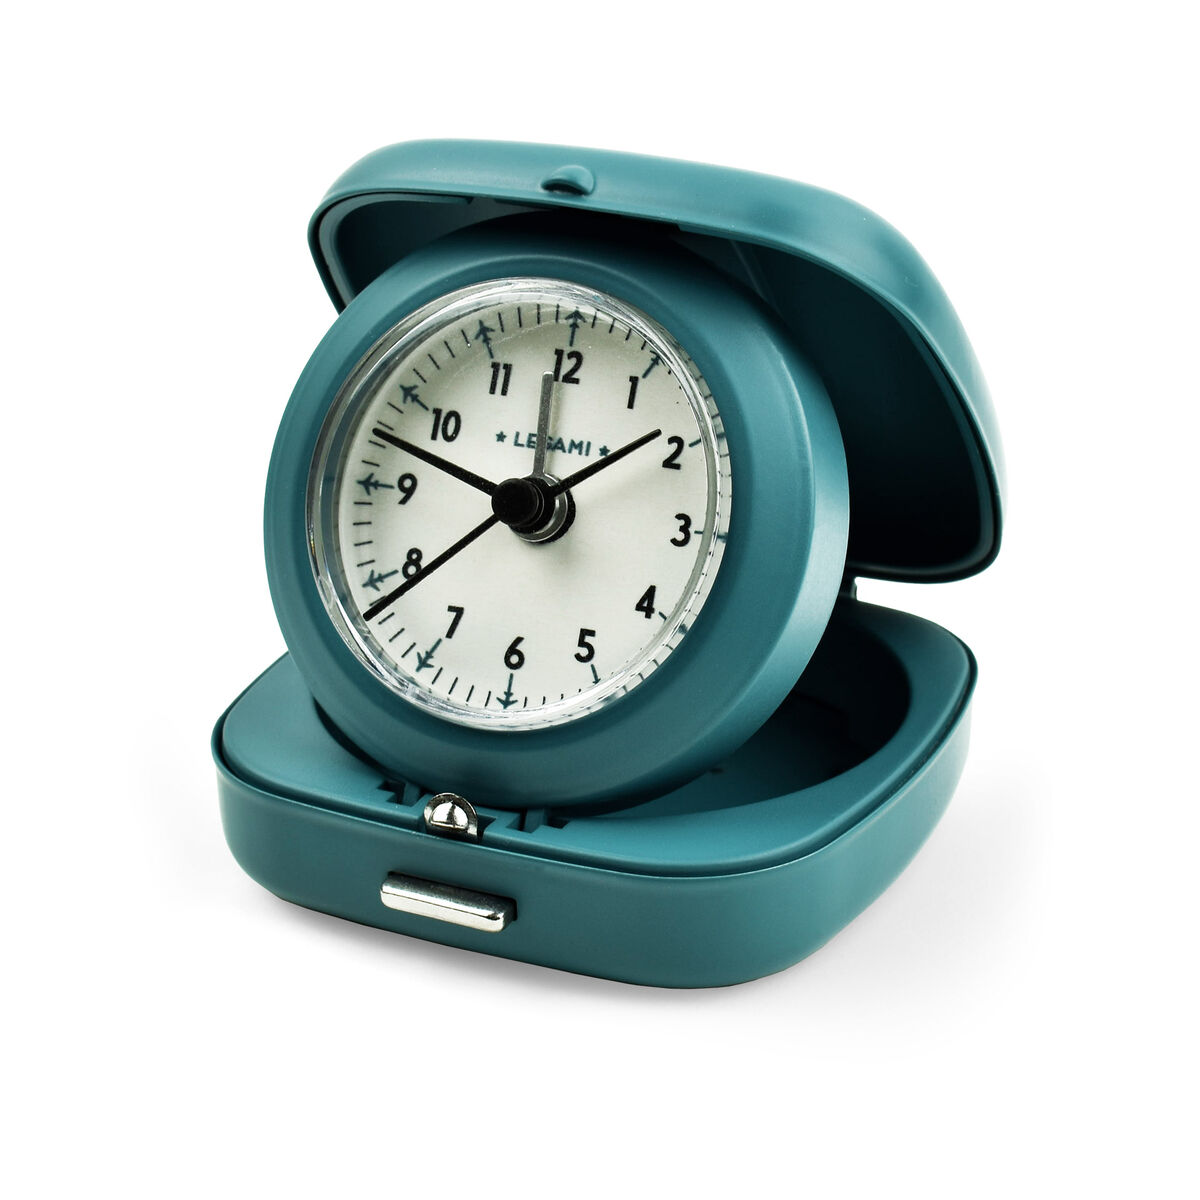 Analogue Travel Alarm Clock, , zoo